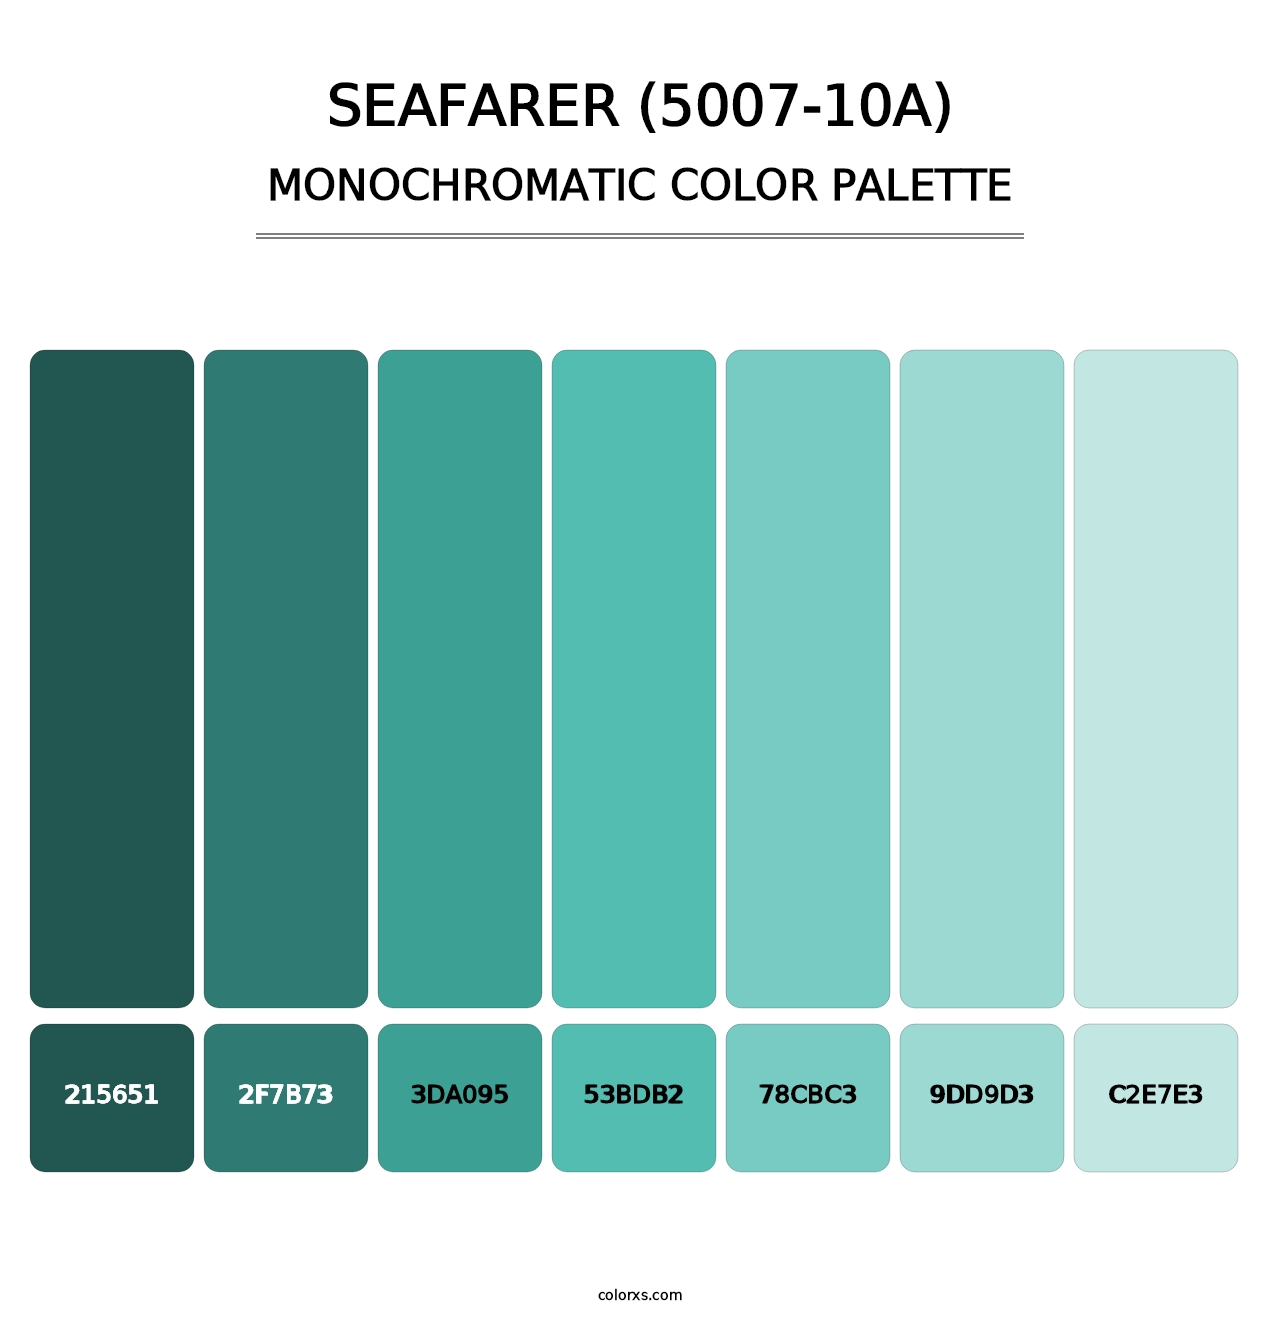 Seafarer (5007-10A) - Monochromatic Color Palette